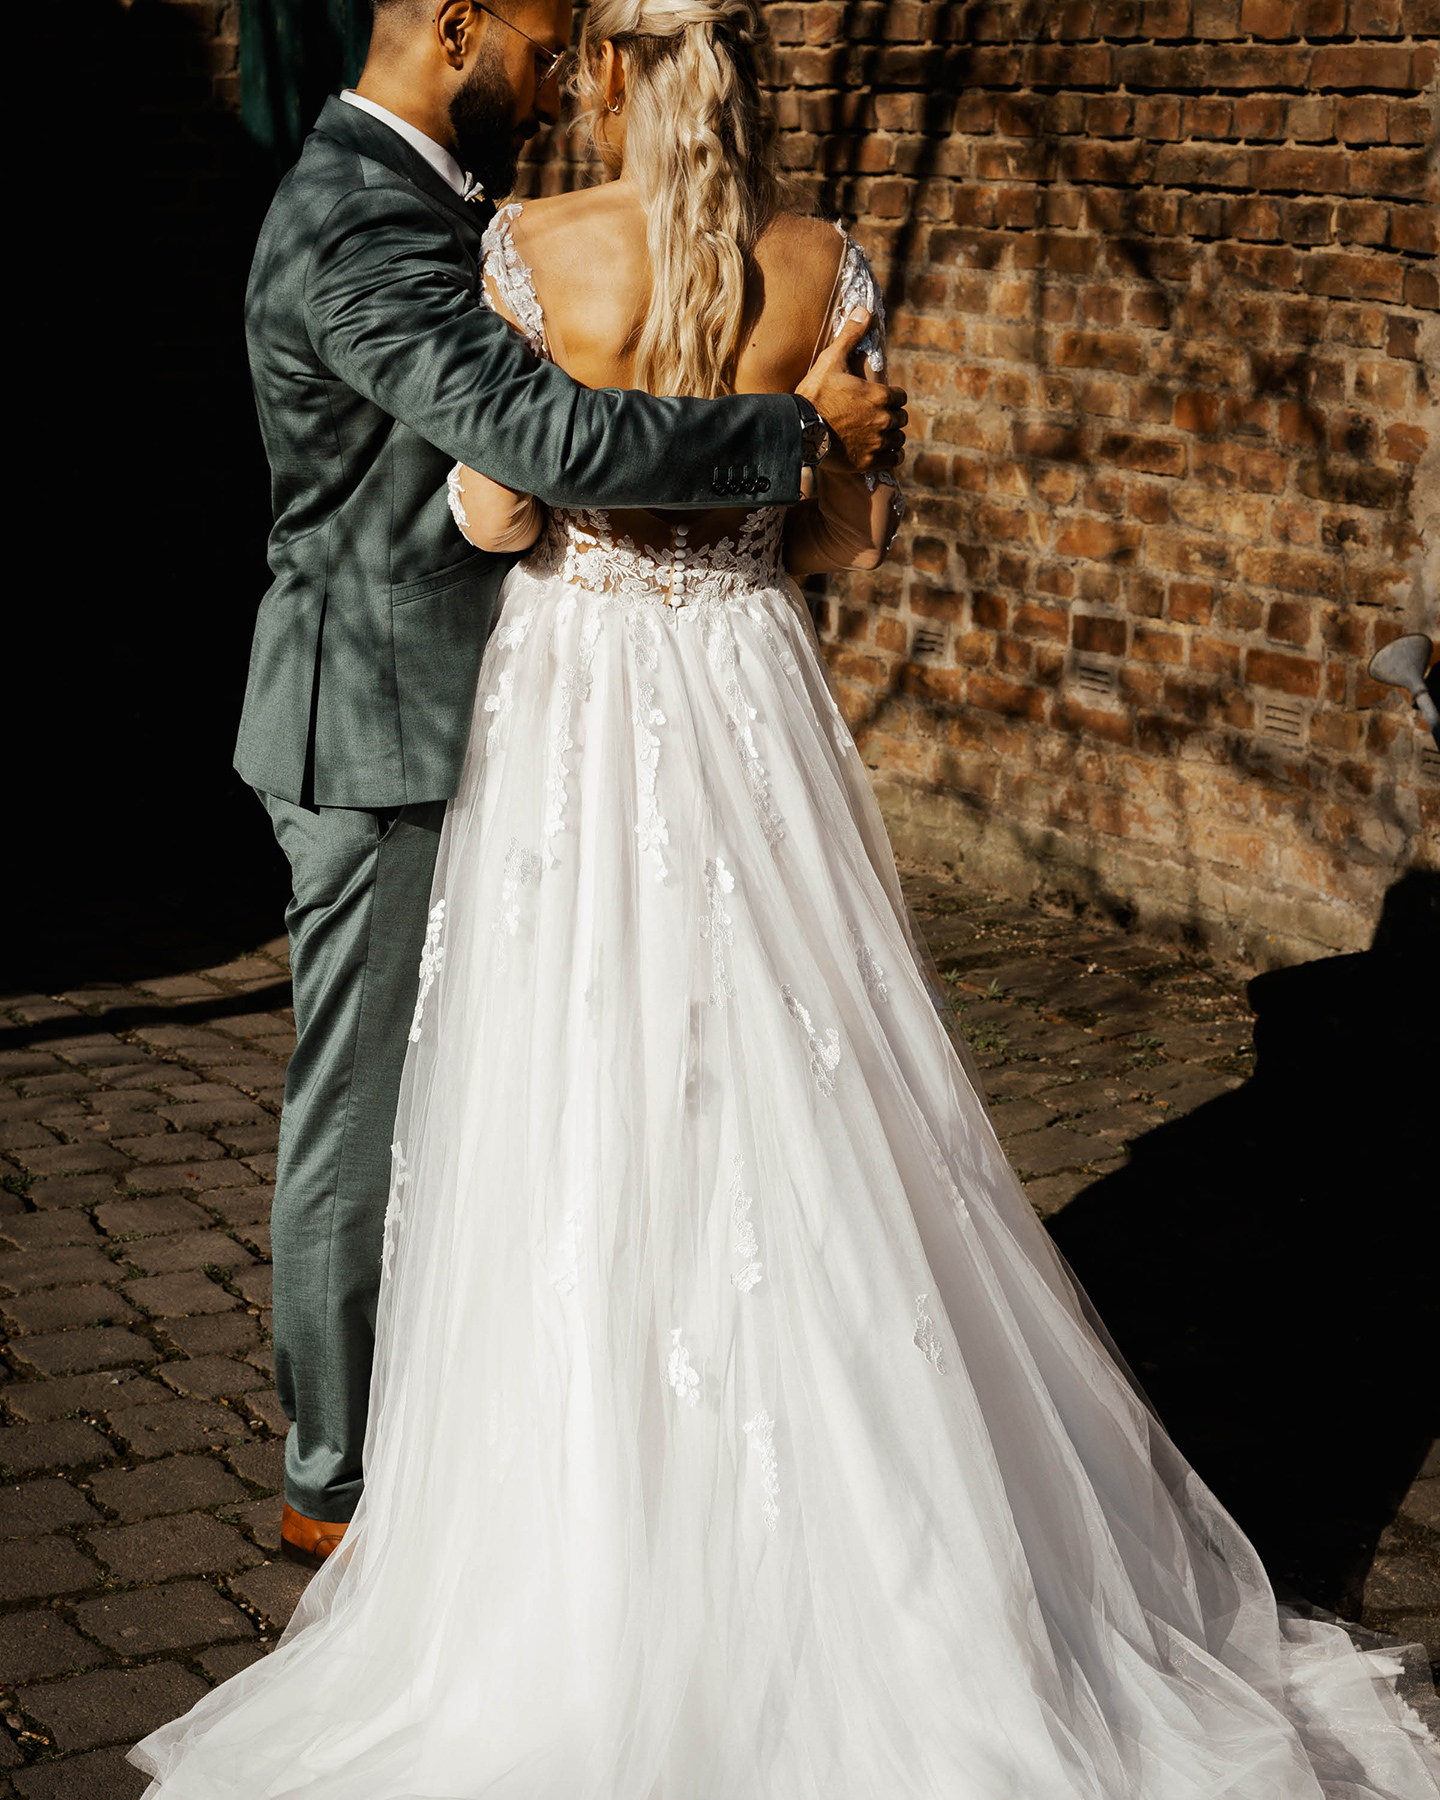  Bräutigam im blaugrauen Anzug legt Arm um seine Braut, die ein Kleid aus weißer Spitze und Chiffon trägt. Im Hintergrund eine Backsteinmauer.